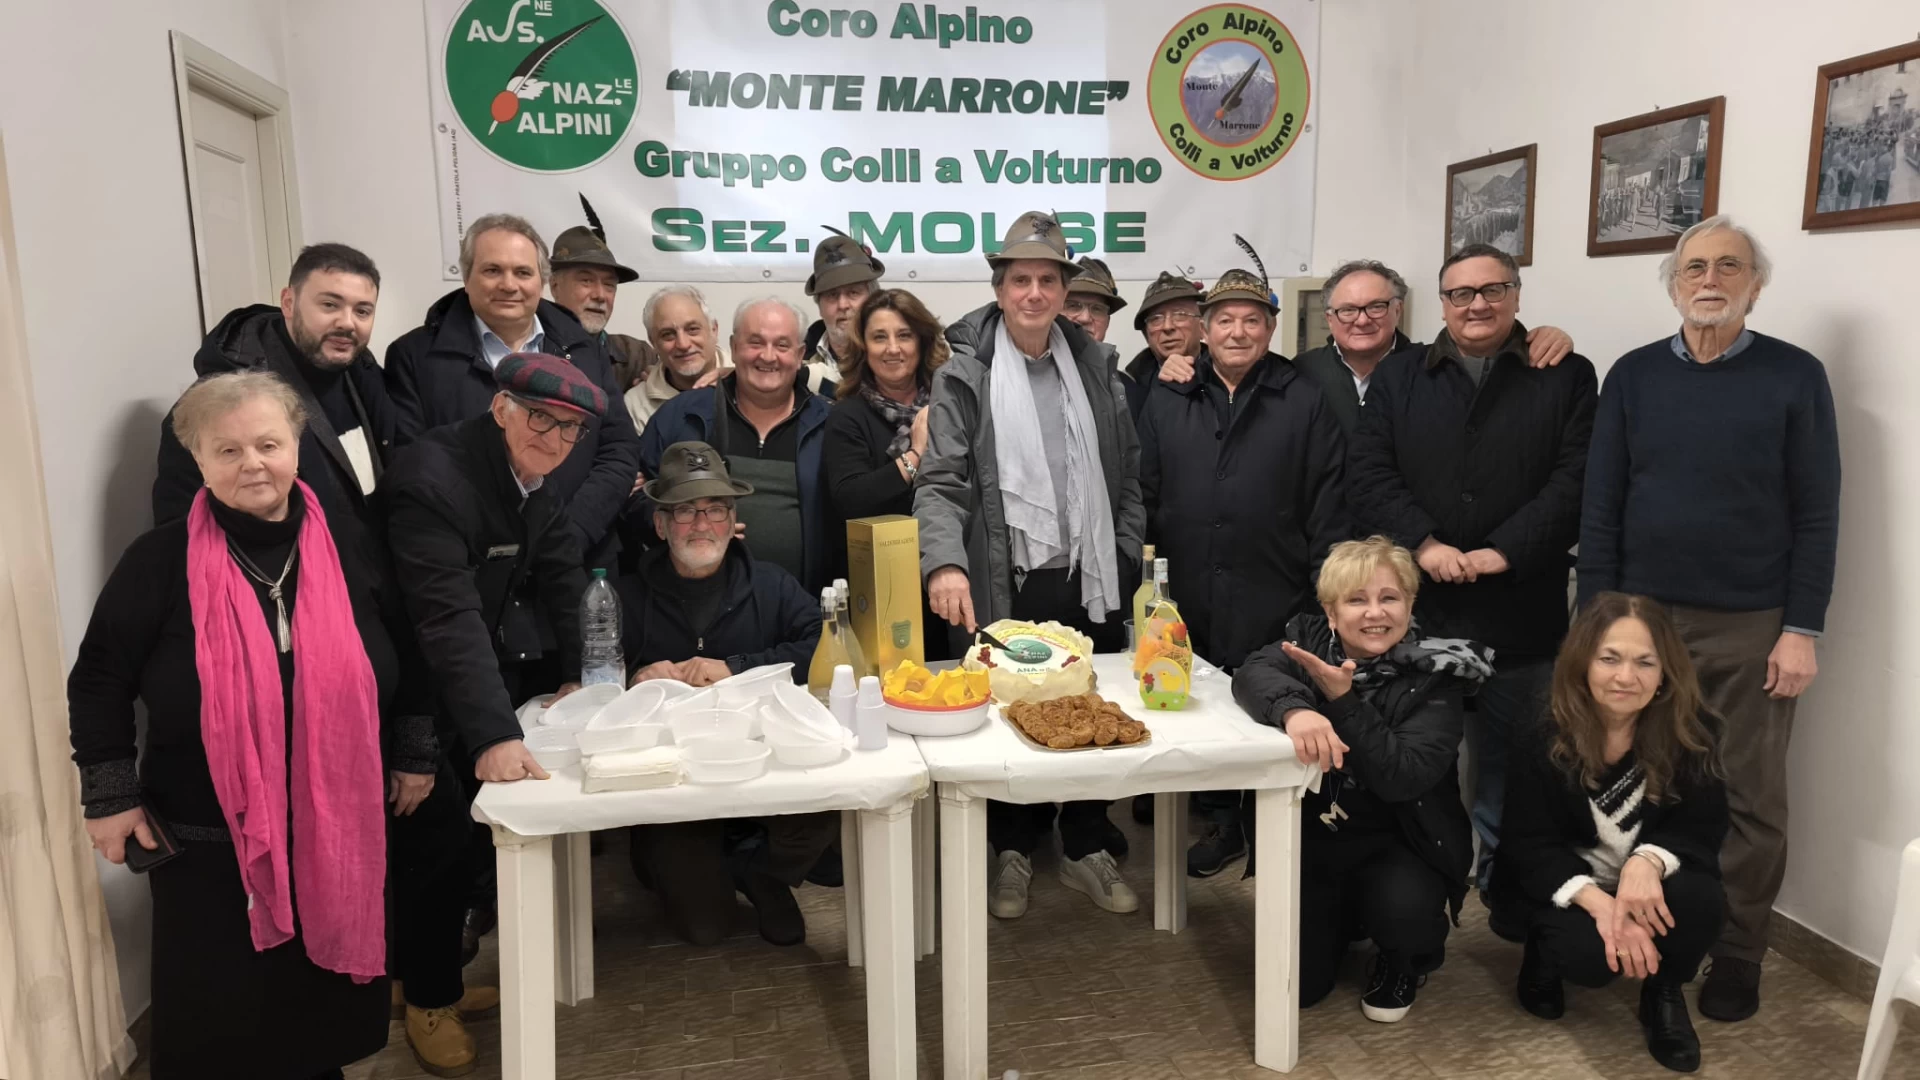 Pierino Giacca e’ il nuovo presidente regionale della Sezione Molise Alpini. Il gruppo di Colli lo omaggia con una cerimonia. Guarda il servizio.